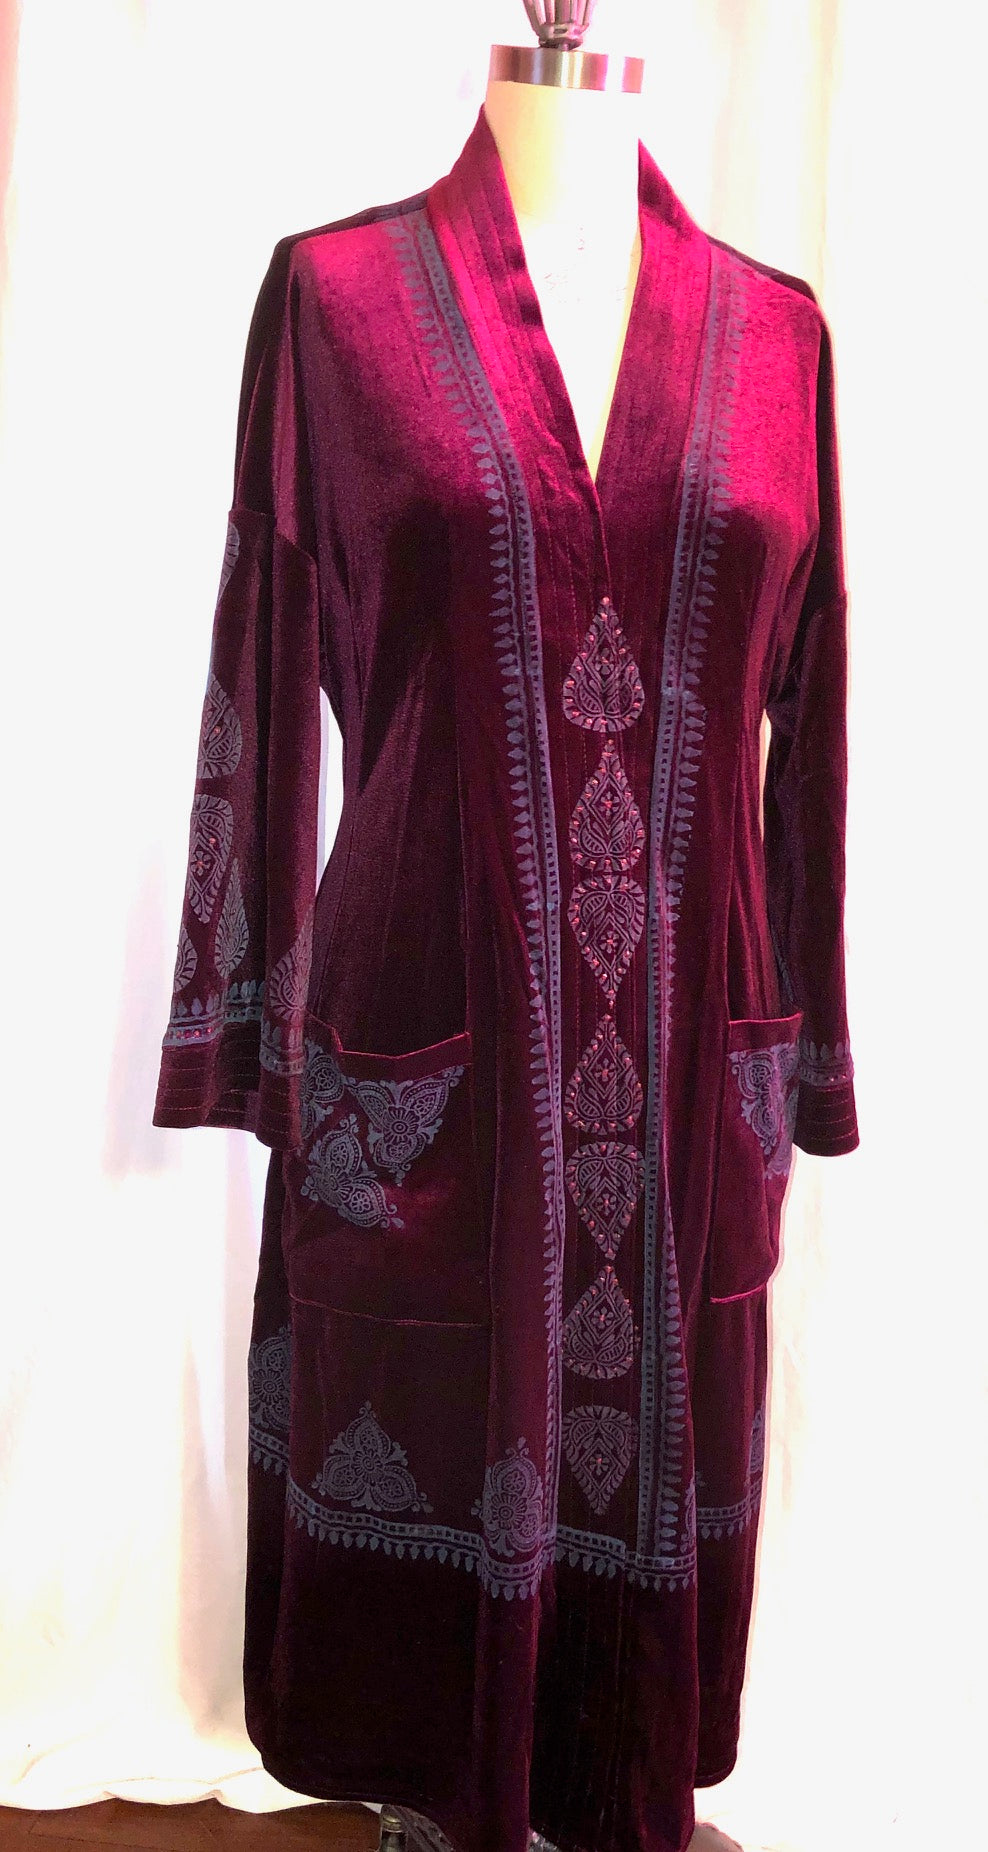 Burgundy/Cherry Stretch Velvet Dress